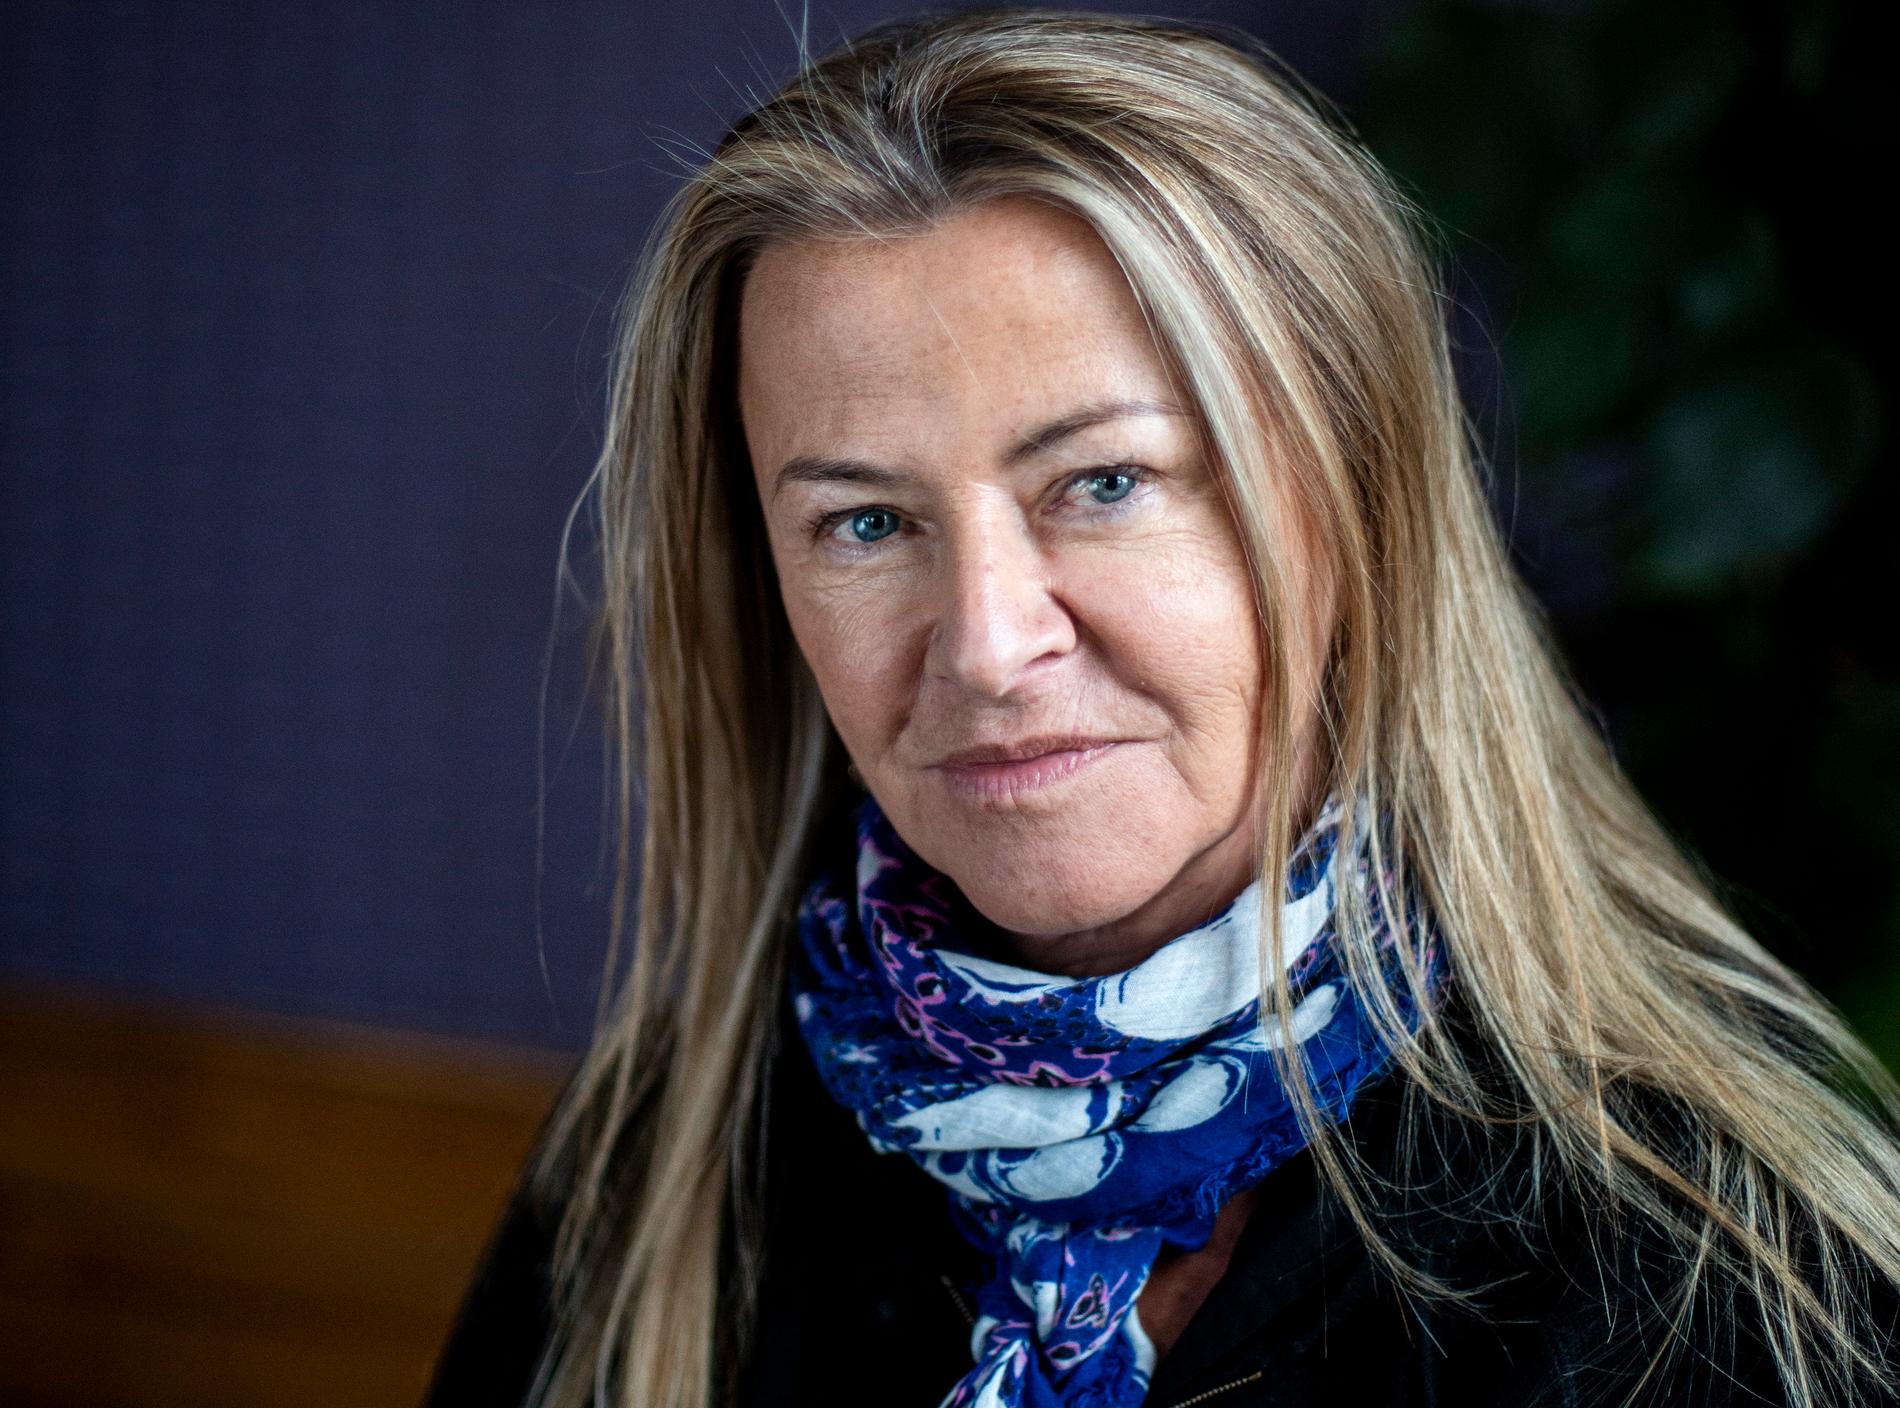 Charlotte Brändström väntar sig starka reaktioner på serien. "Det spelar ingen roll om de är positiva eller negativa", säger hon.